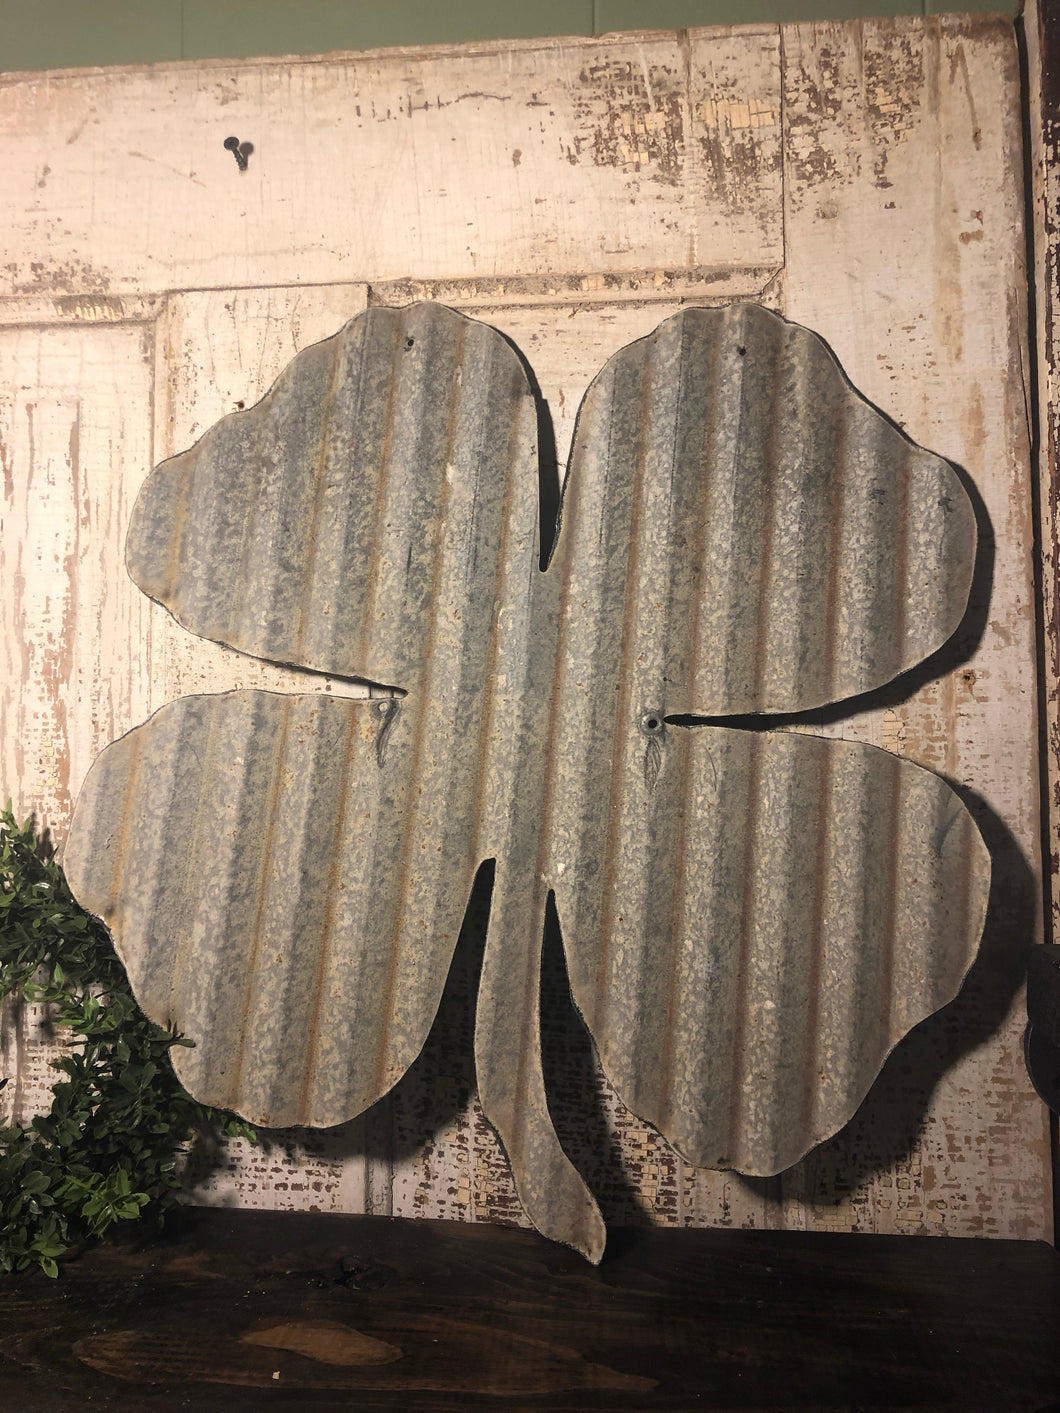 Corrugated metal 4 leaf clover (18”) - Spring decor - St Patrick’s Day decor - Shamrock